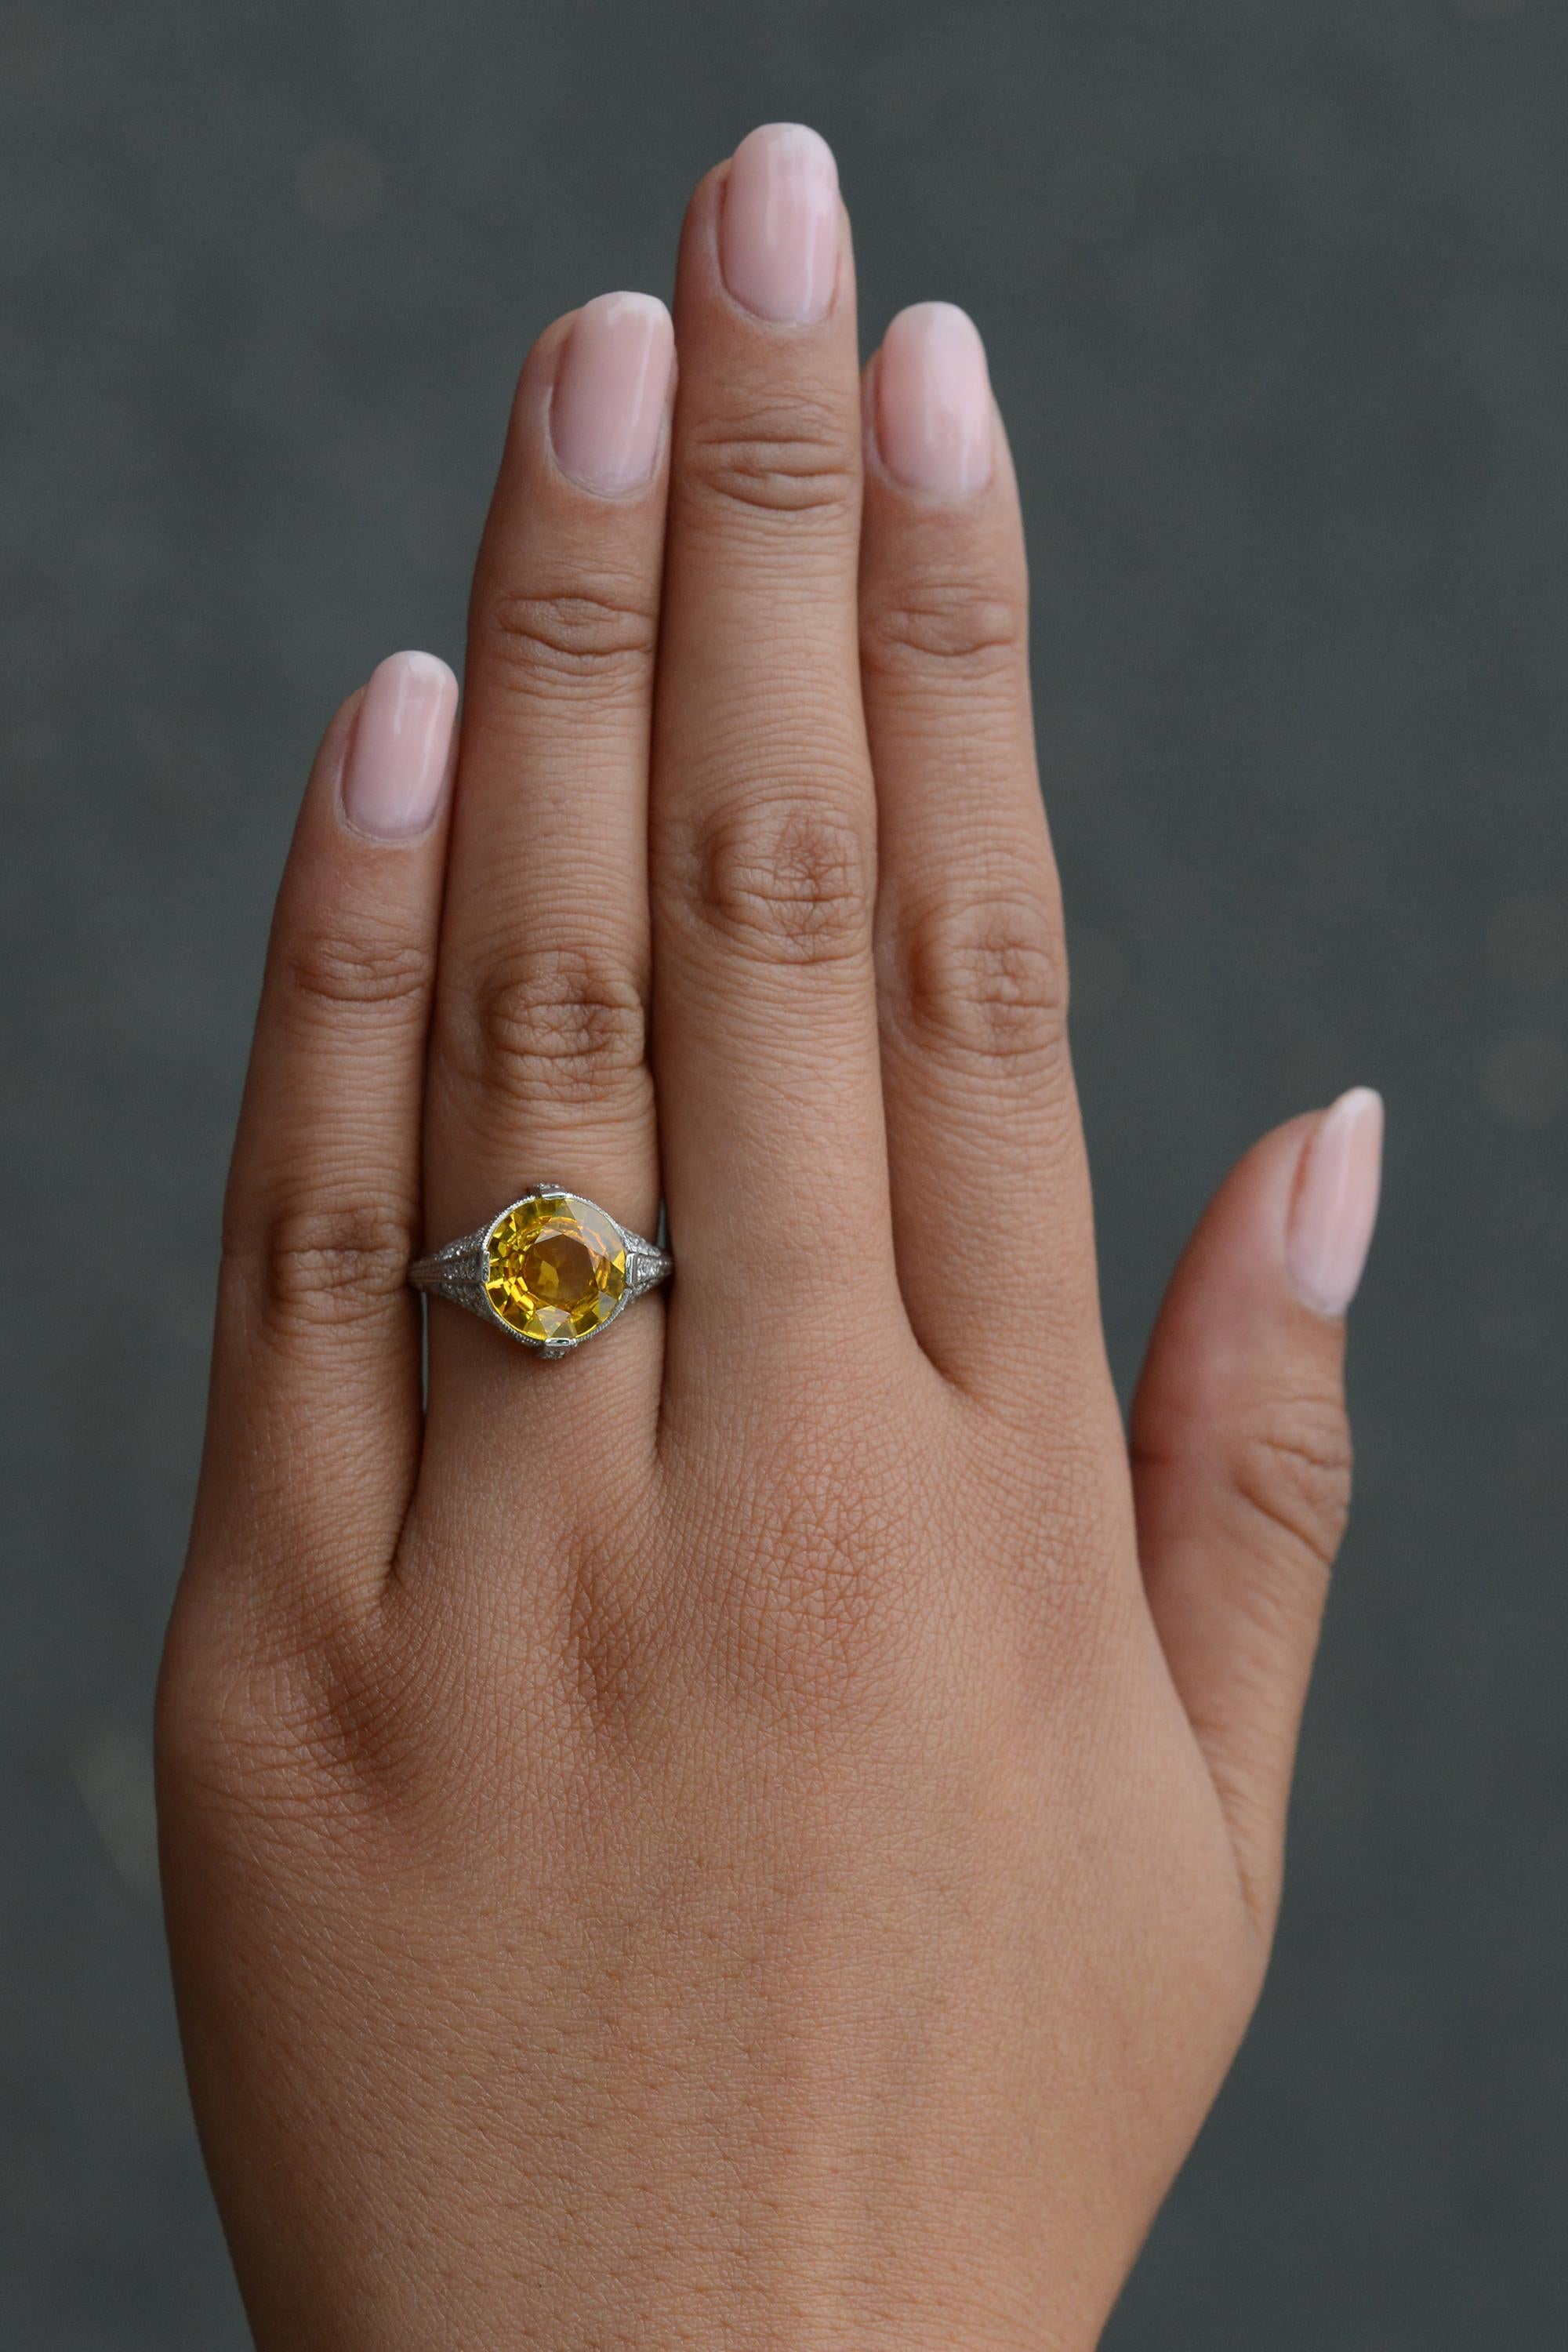 Dieser farbenfrohe Ring ist ein wahrer Sonnenschein an Ihrer Hand! Zentriert auf einem lebendigen, 4 Karat flammenden gelben Saphir, der für einen unglaublich auffälligen Edelstein-Verlobungsring sorgt. Die Fassung ist ein authentisches